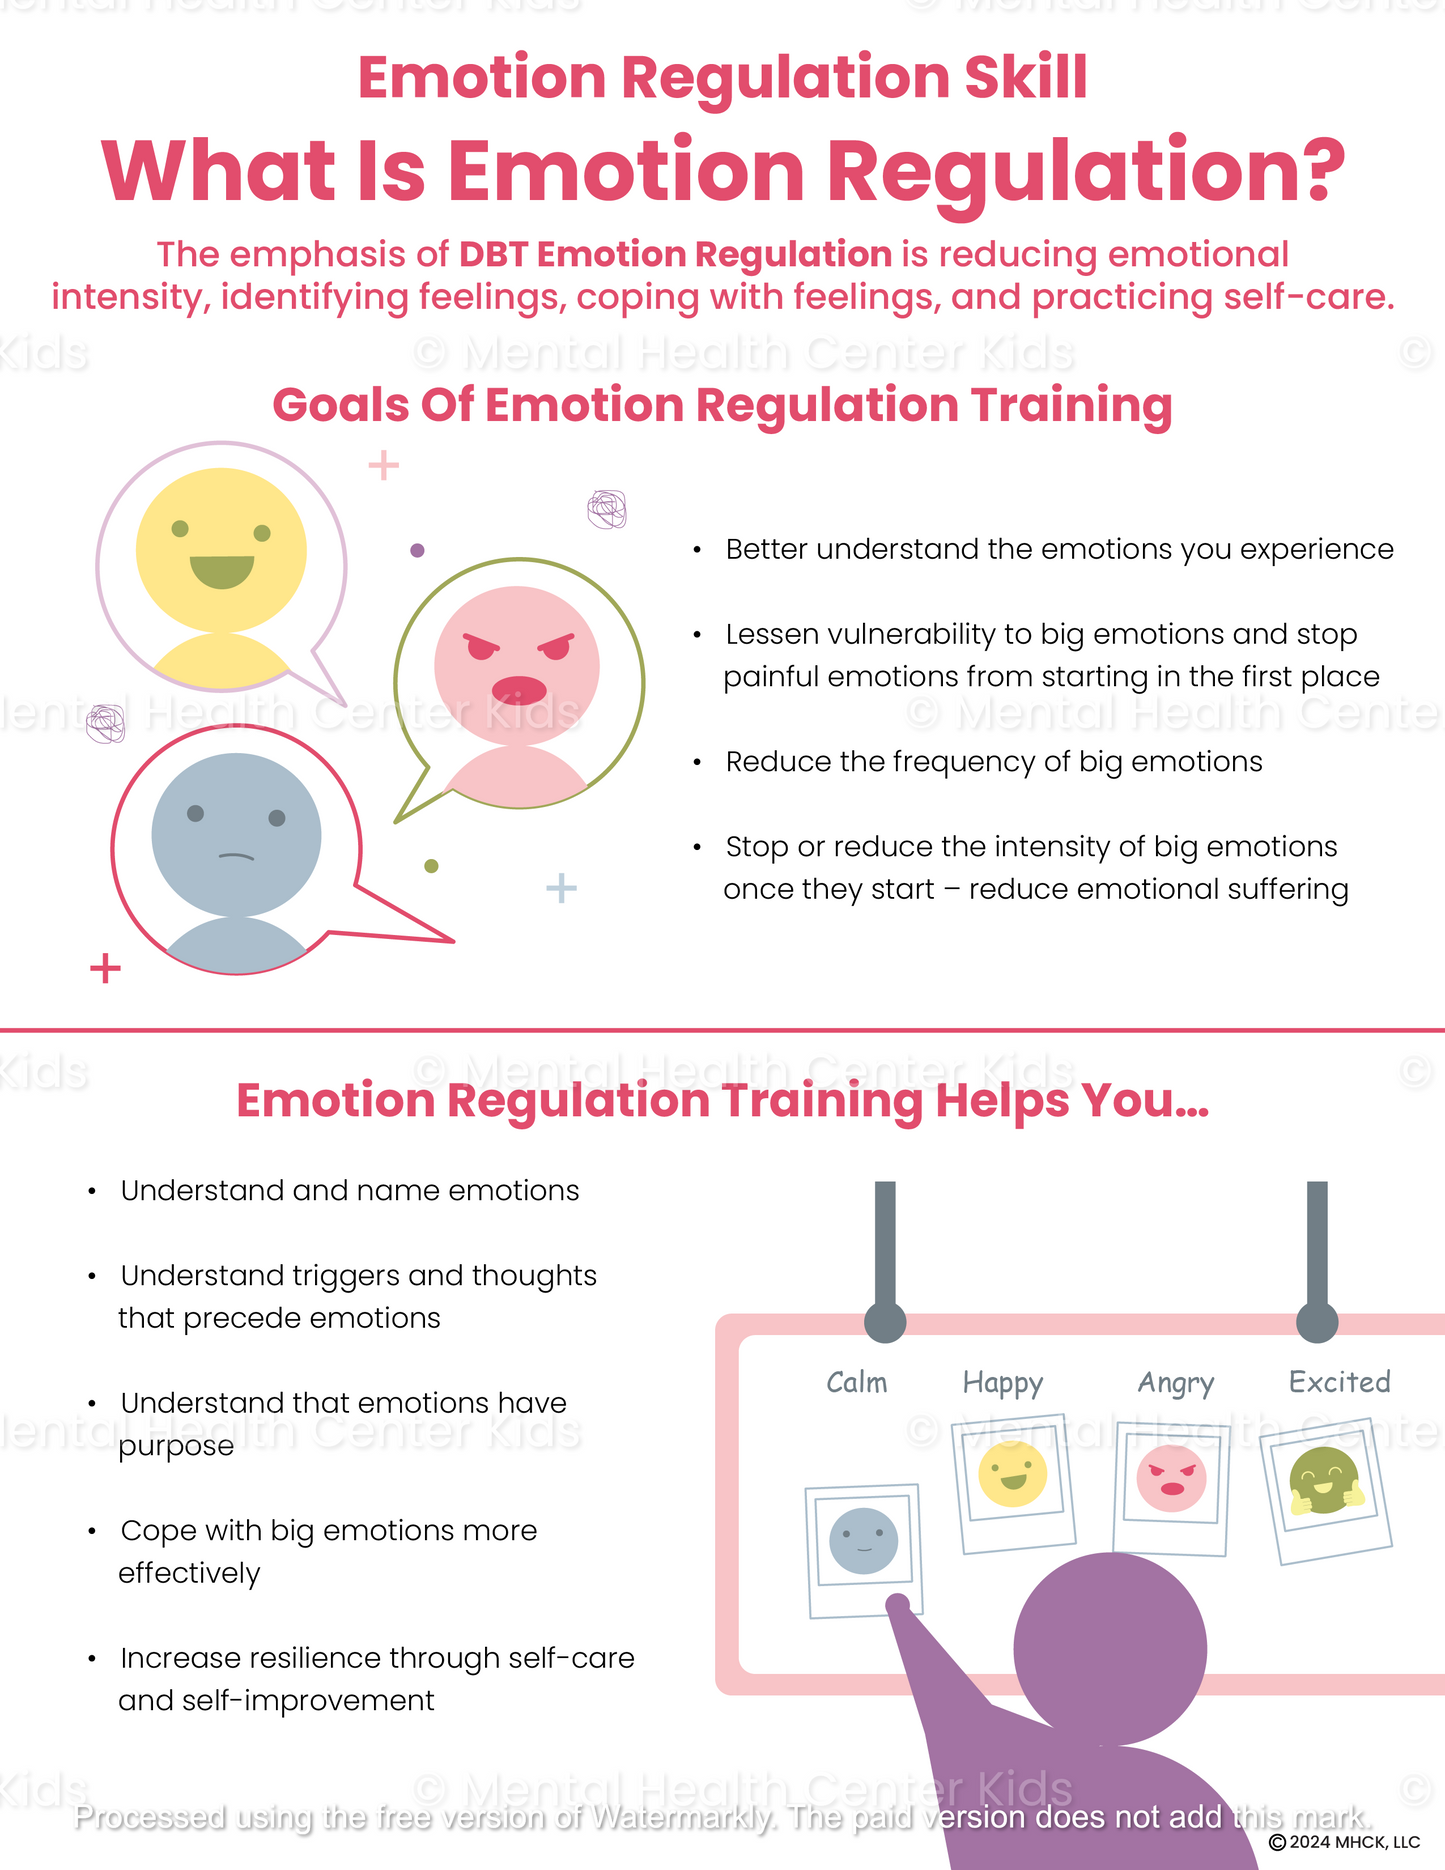 dbt what is emotion regulation